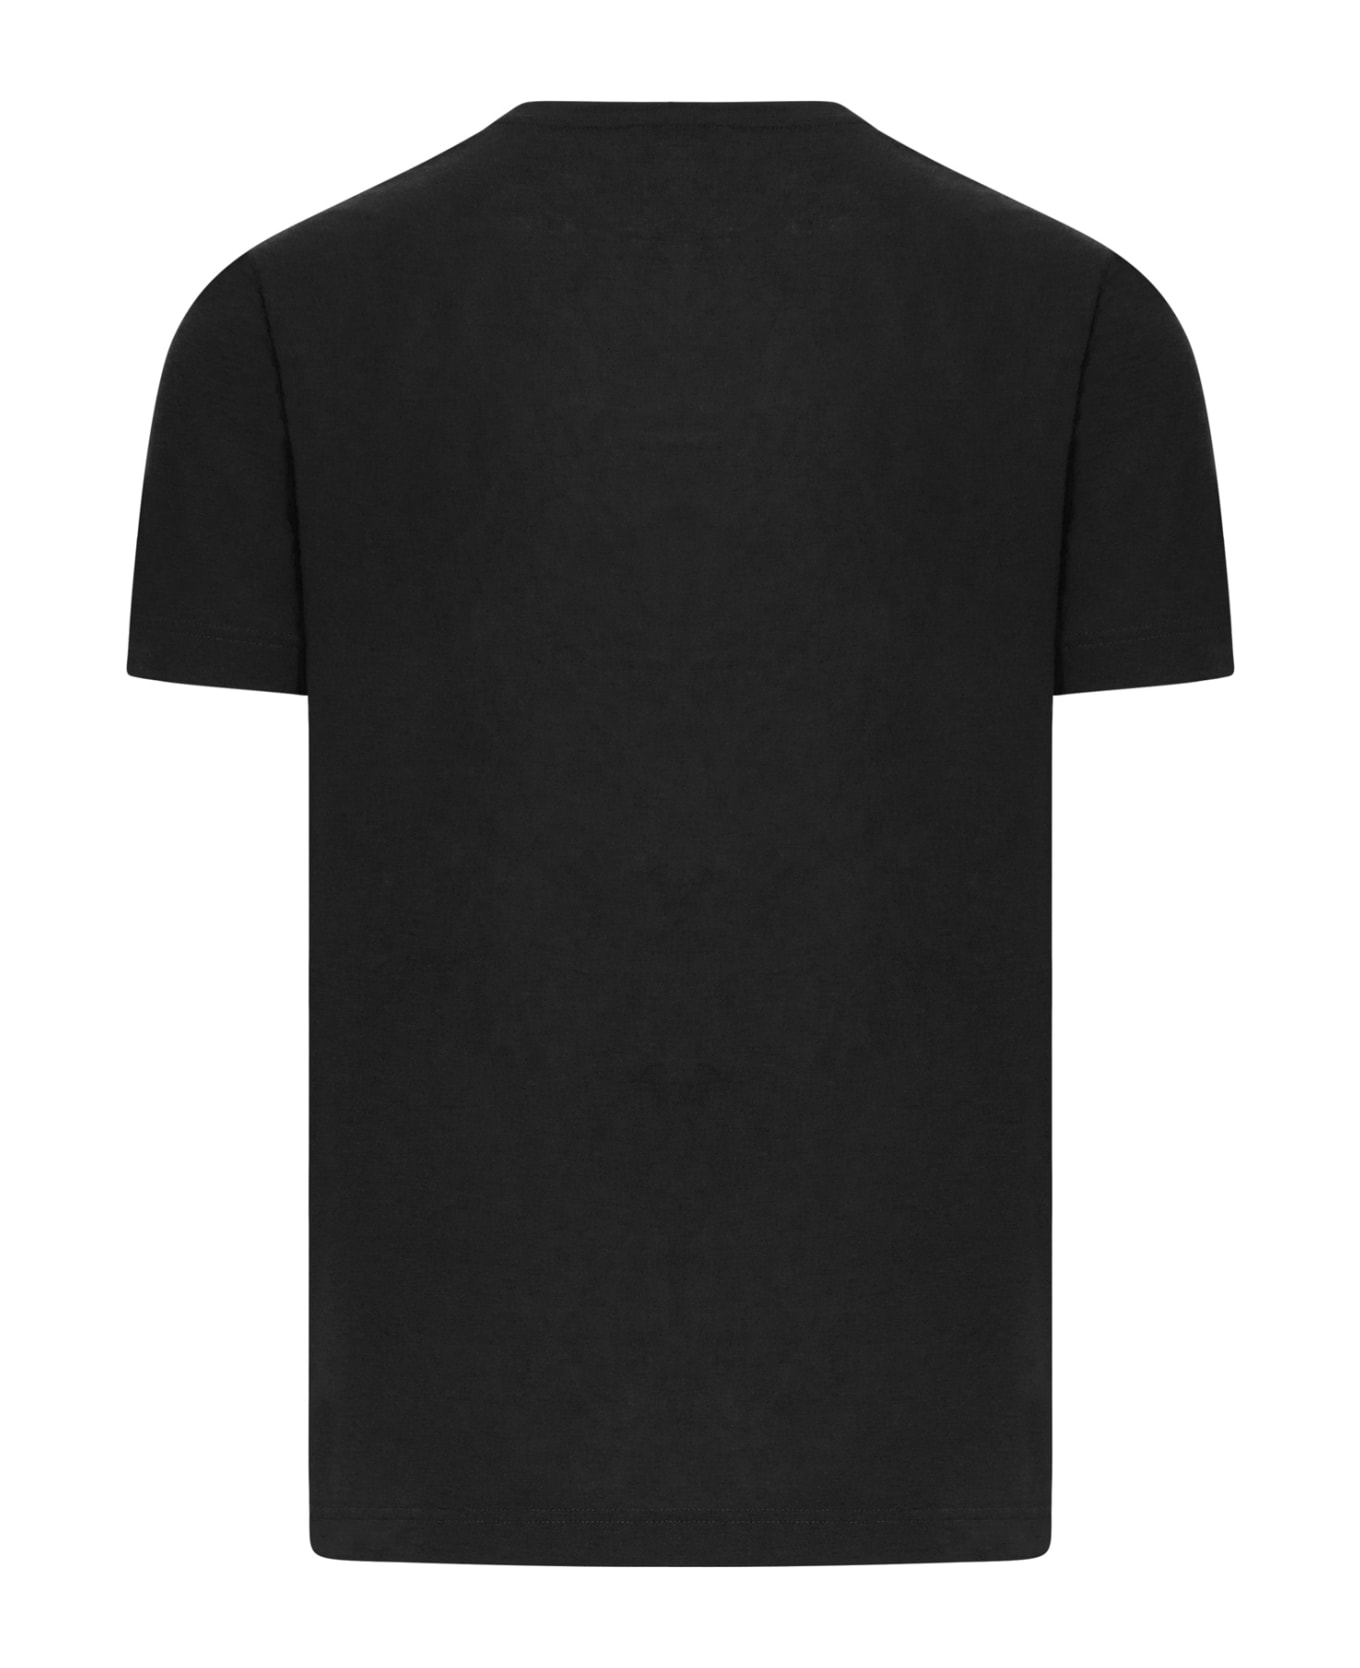 Zanone Tshirt Ss - Black